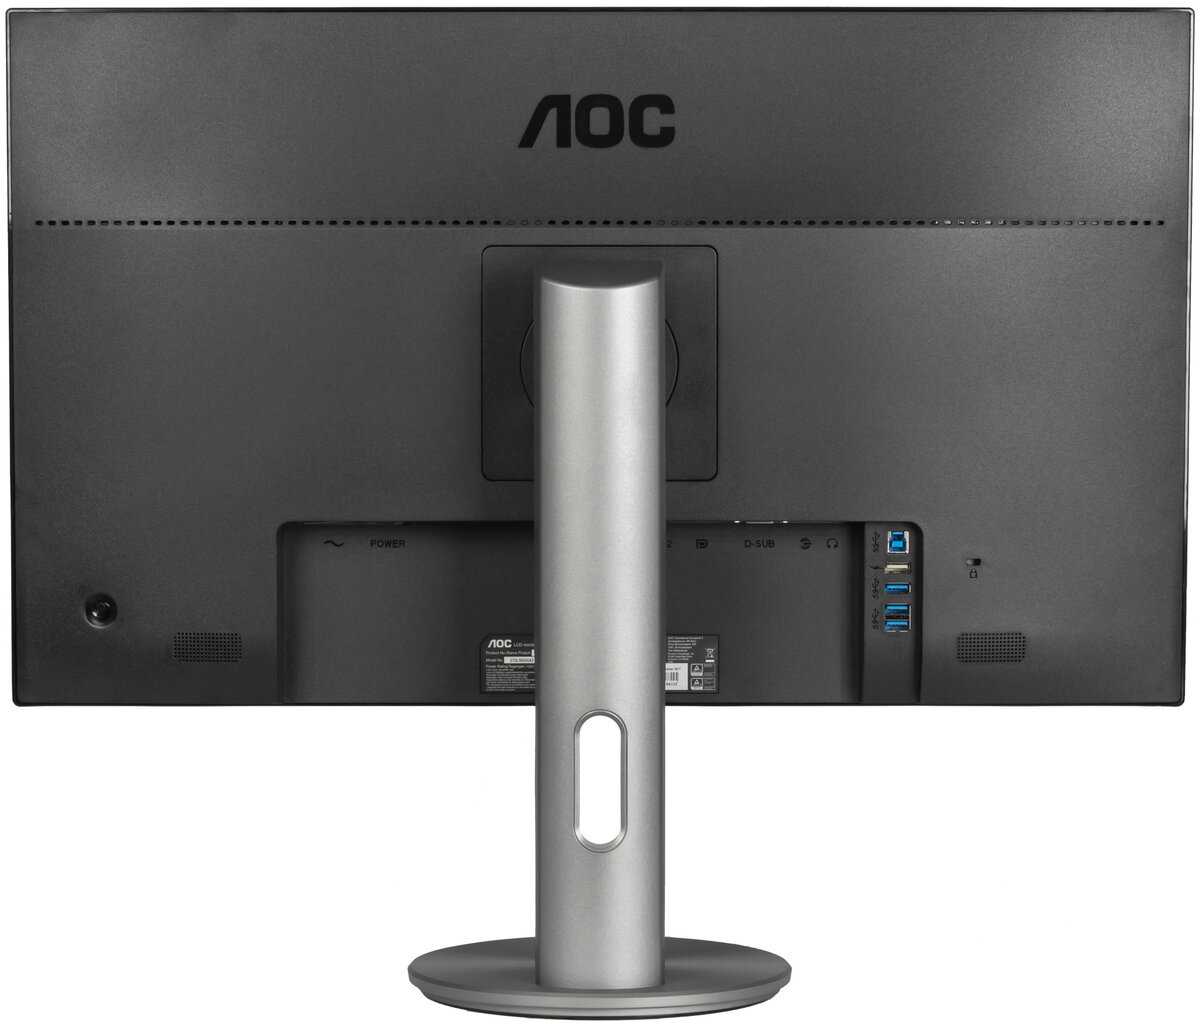 Жк монитор 24" aoc e2451fh — купить, цена и характеристики, отзывы